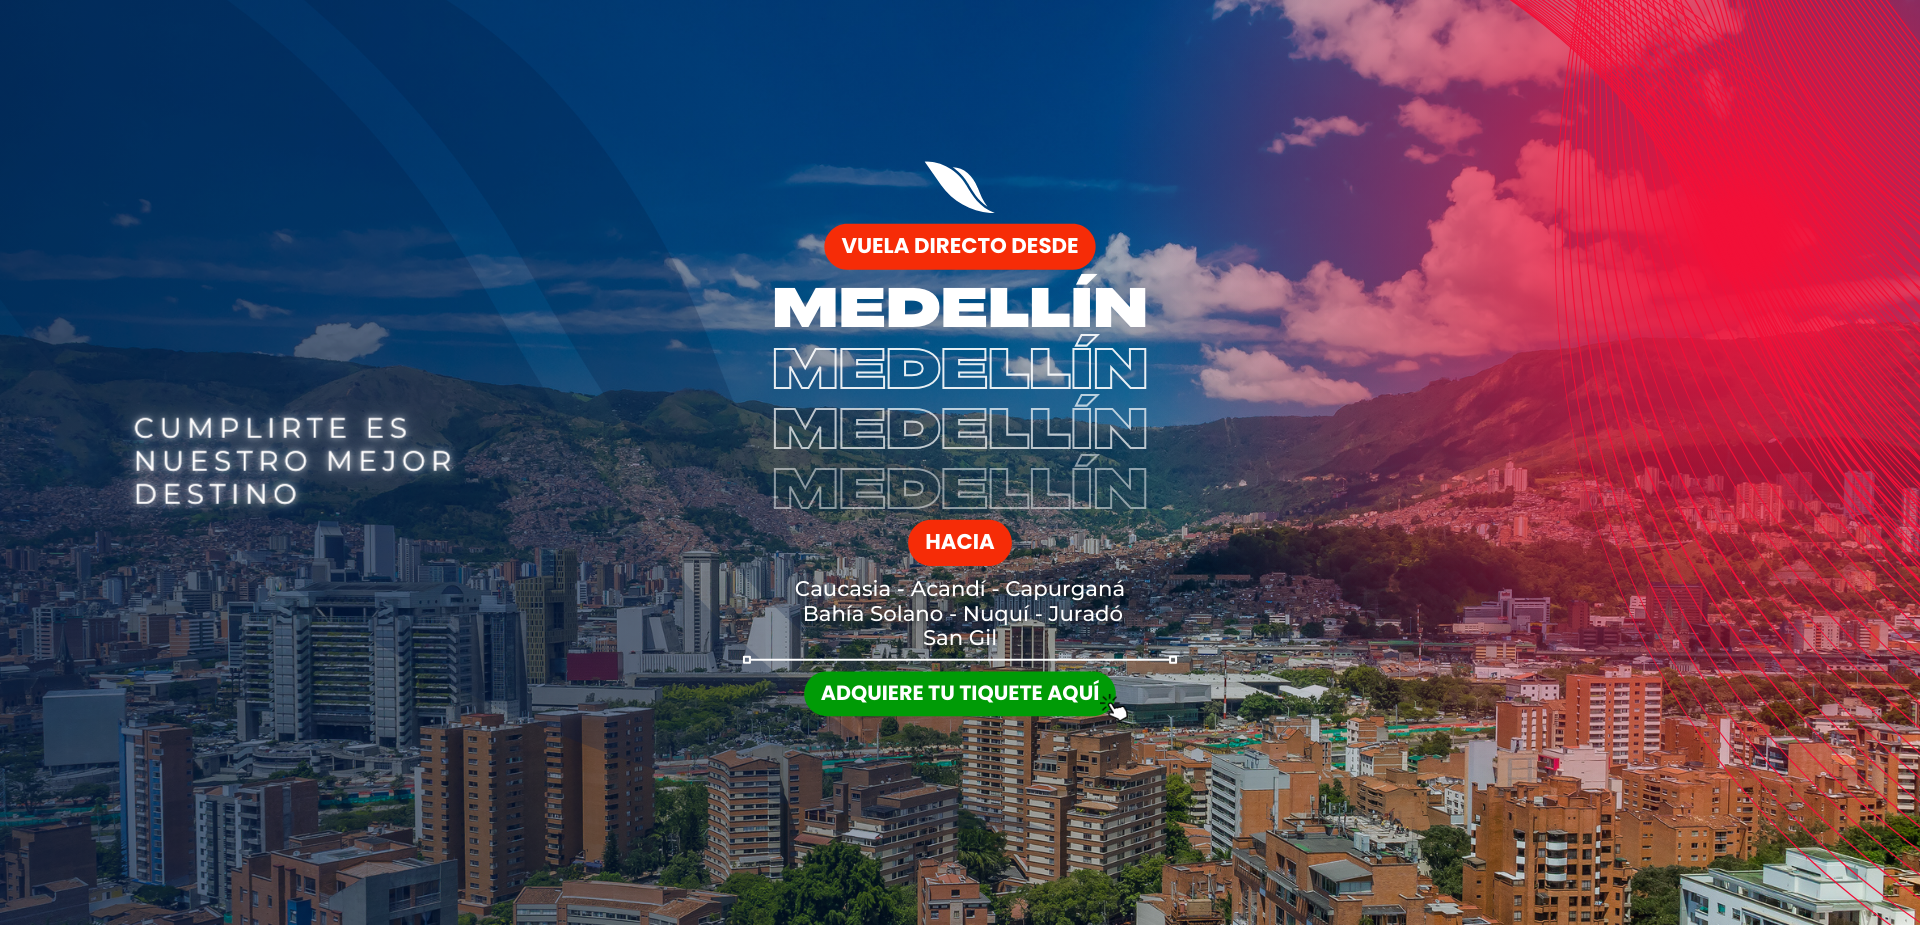 Vuela Directo desde Medellín hacia nuestros diferentes destinos.